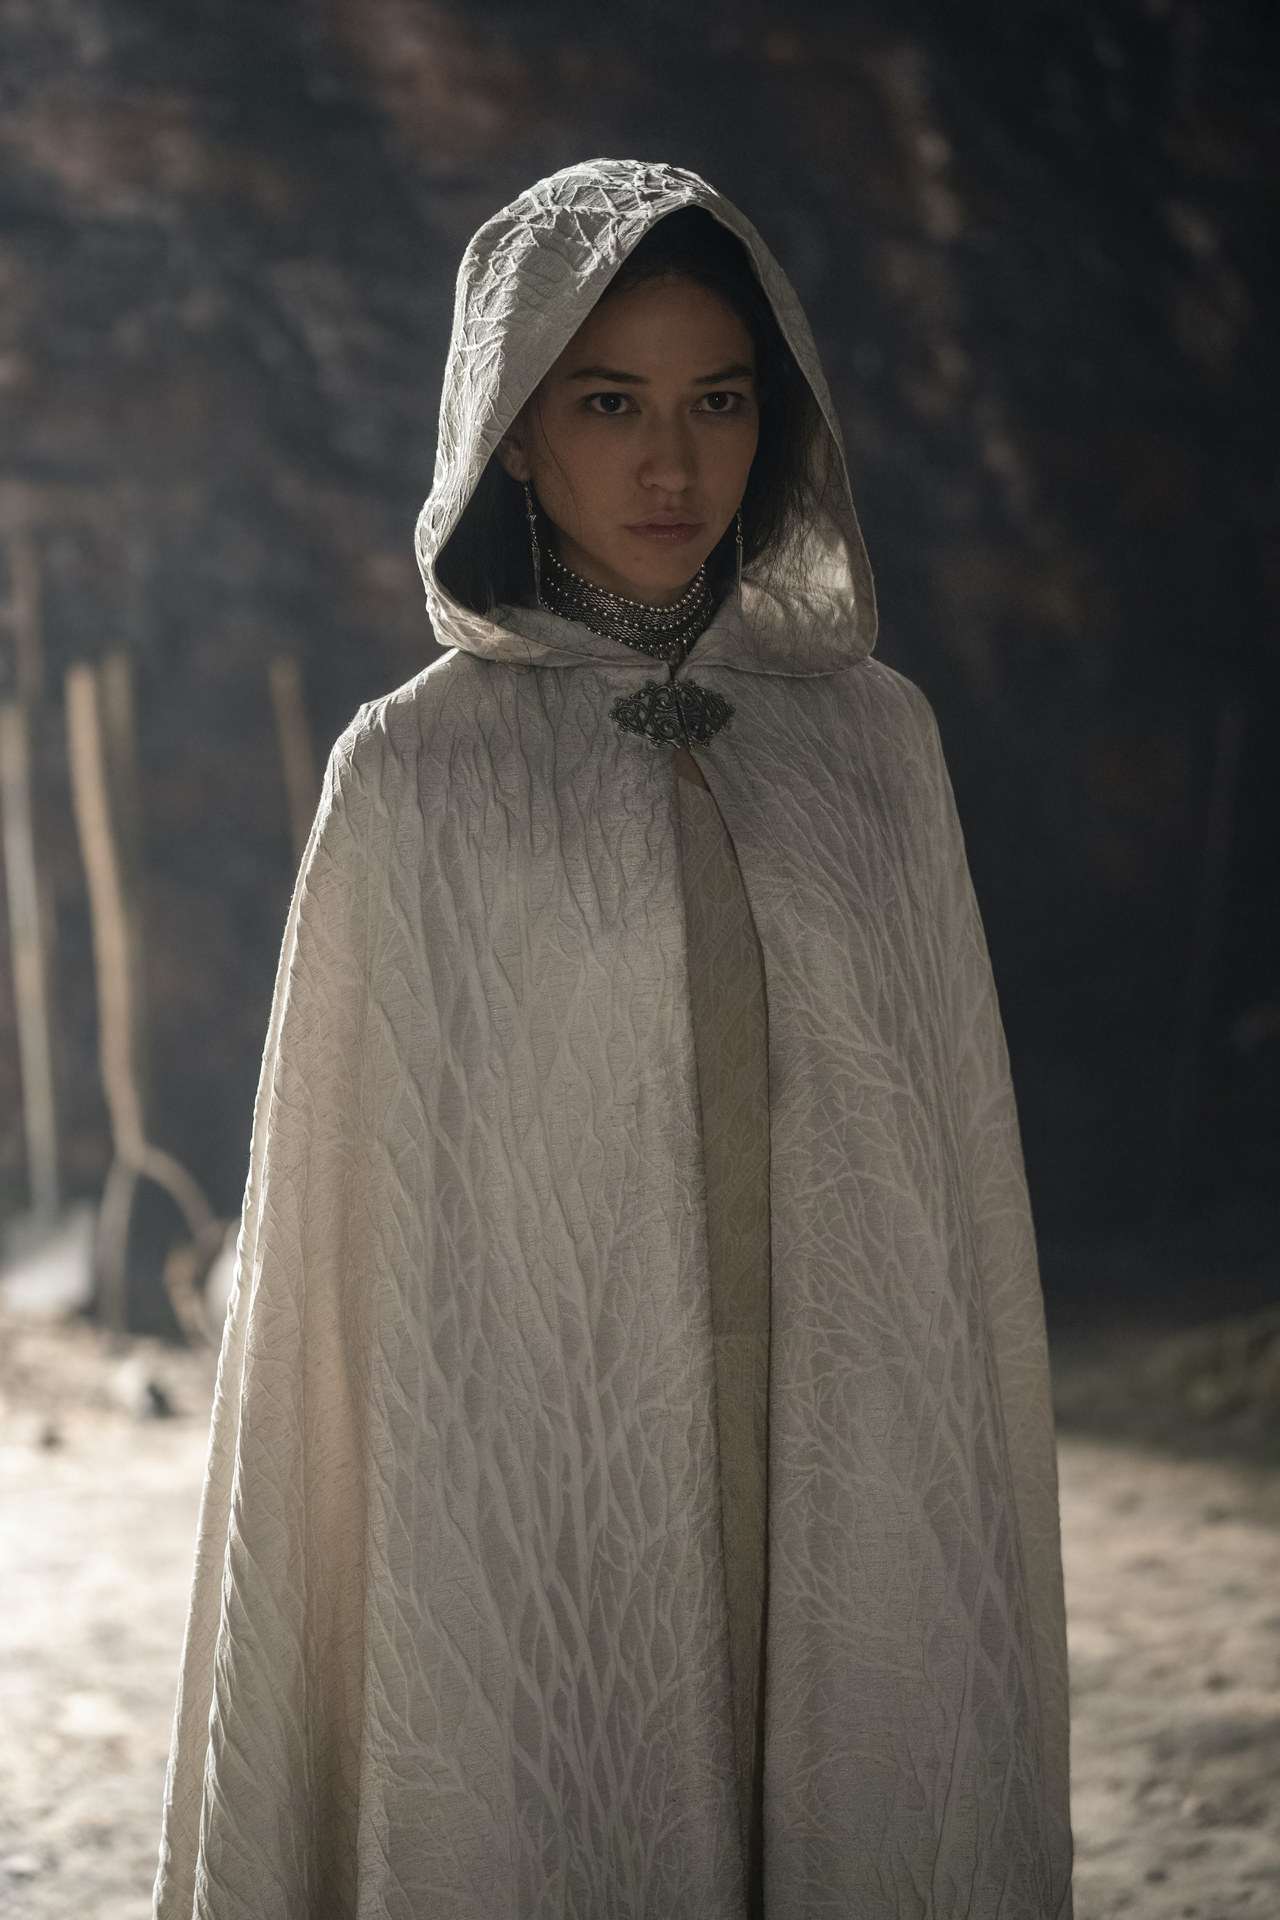 Mysaria wears a pale cloak